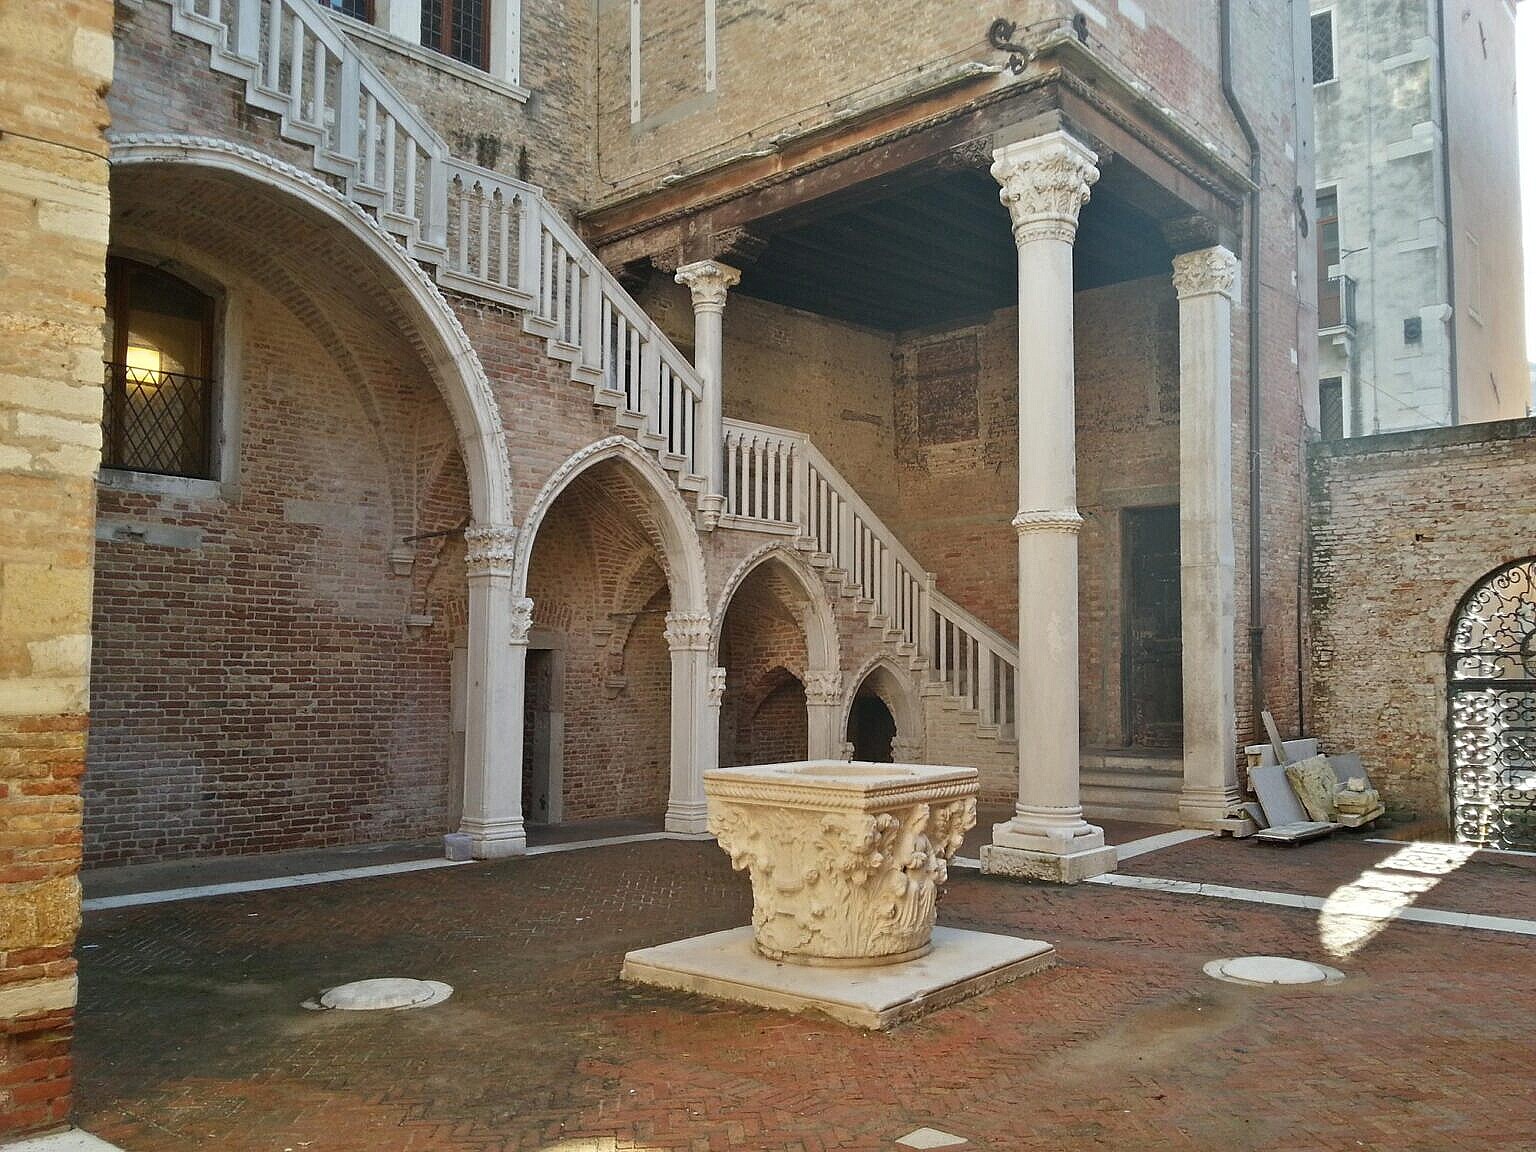 The monumental stairway and the vera da pozza.